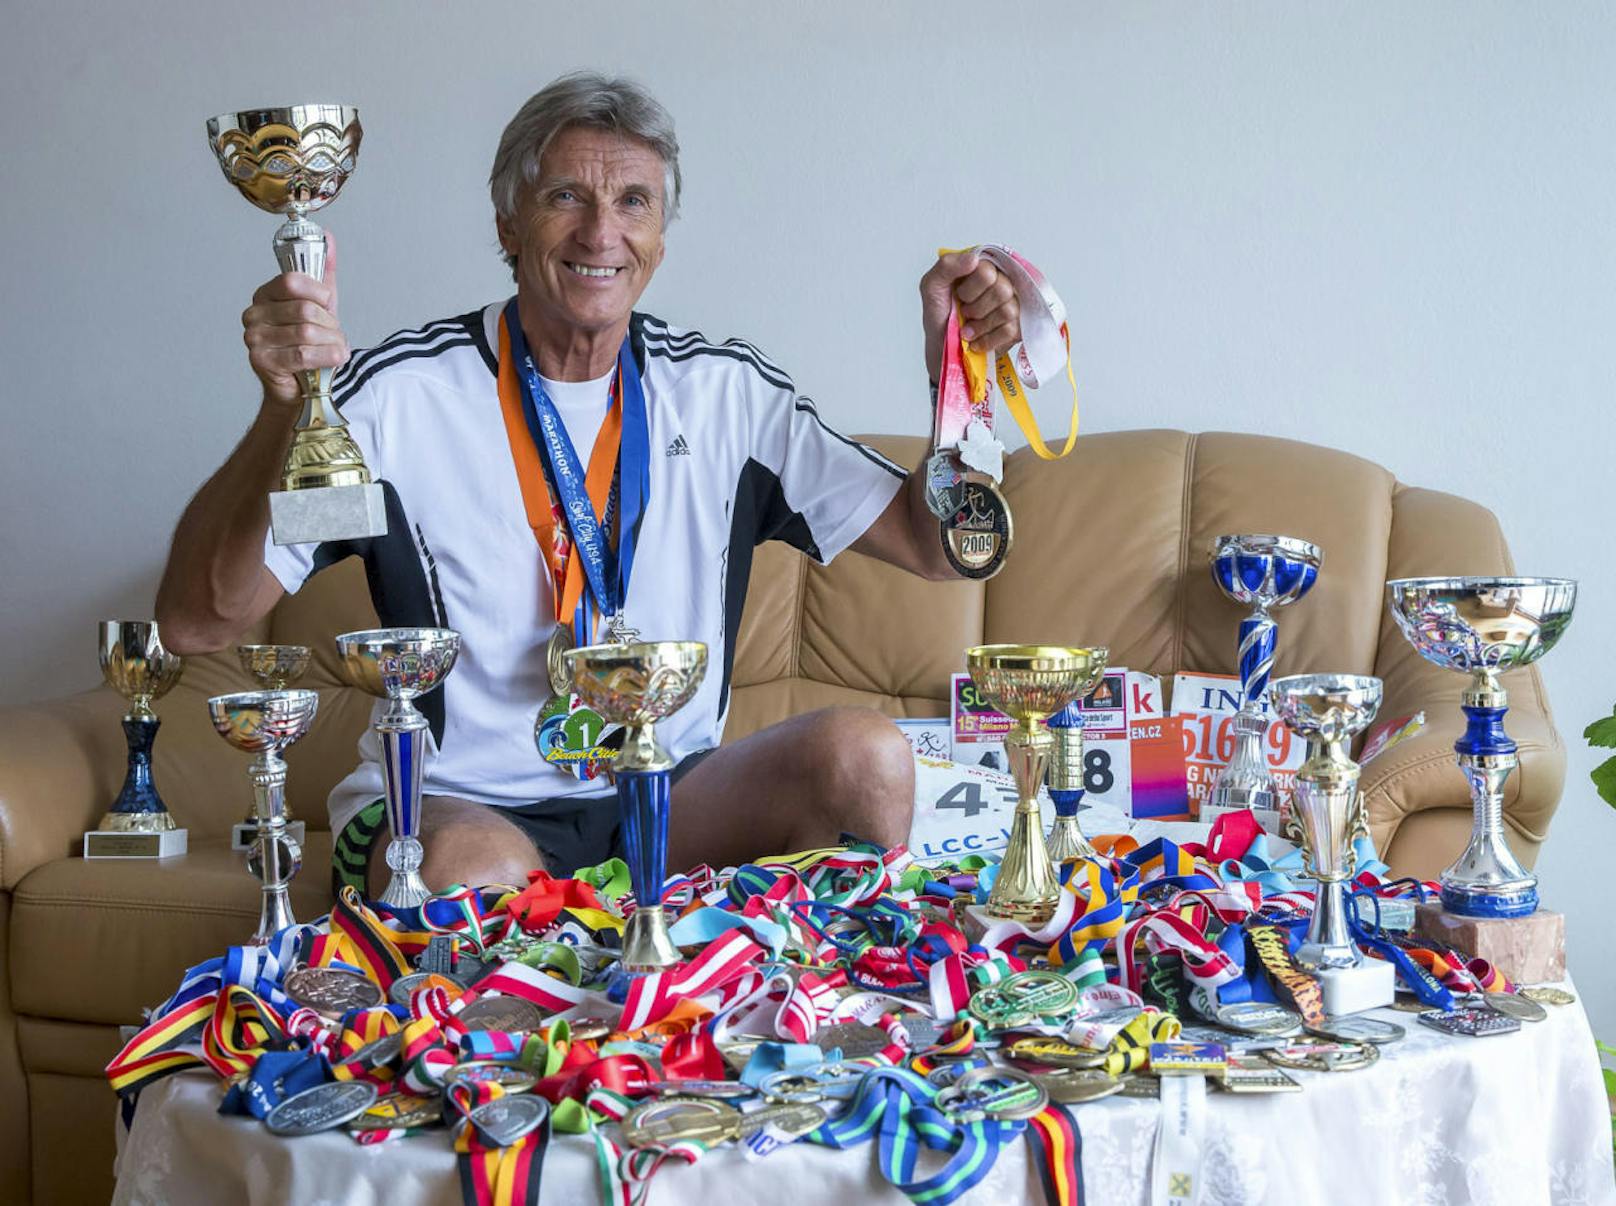 Mehr als 300 Medaillen, dazu Pokale und Startnummern hat er auf seinem Wohnzimmertisch in Wien-Simmering ausgebreitet. "Ich bin schon in 53 Ländern gelaufen. Weitere sechs Nationen will ich noch heuer bereisen."